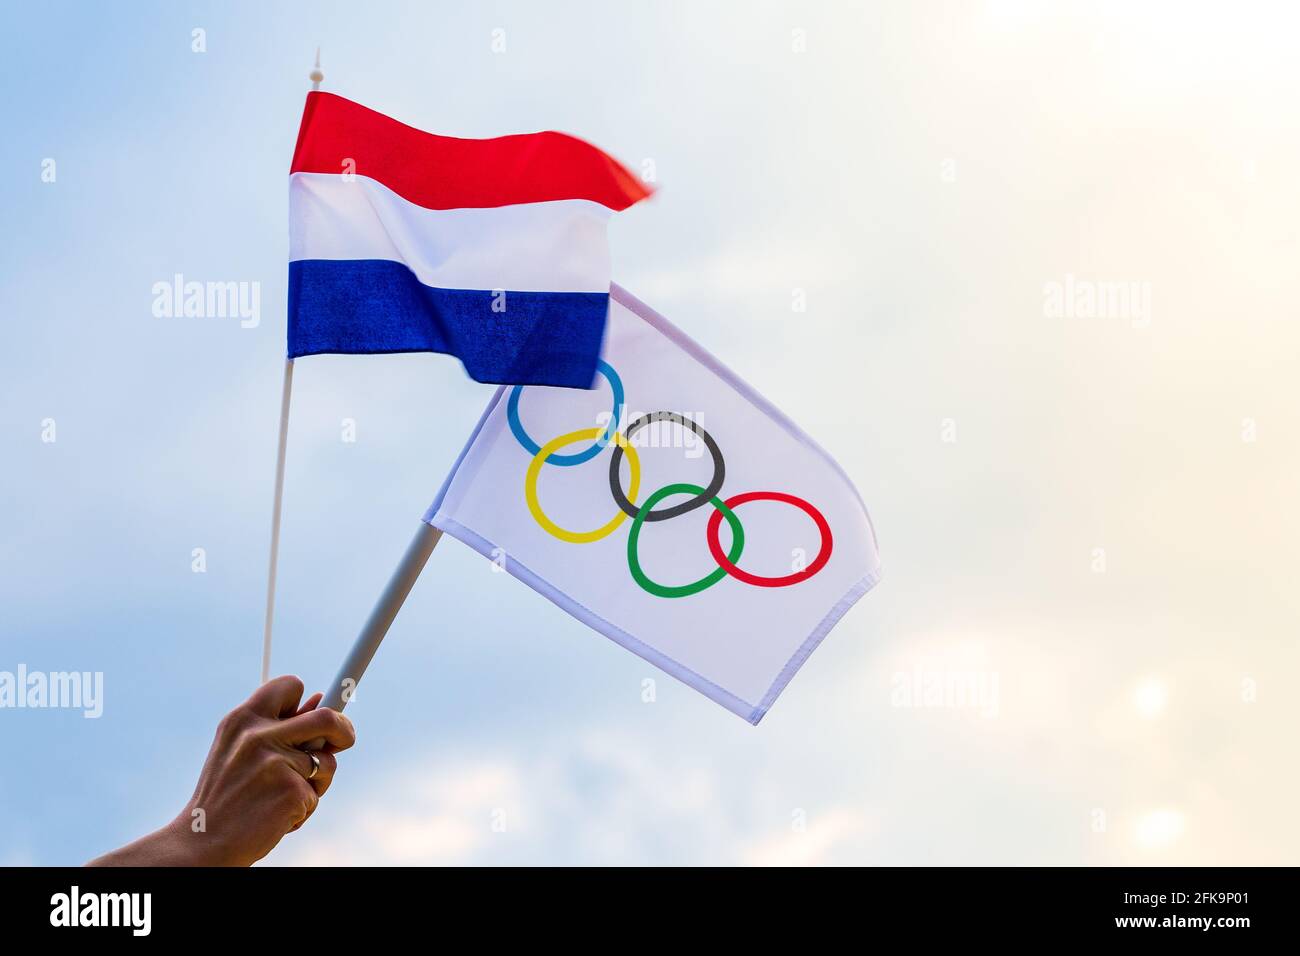 Fan sventolando la bandiera nazionale dei Paesi Bassi e la bandiera olimpica con anelli simbolo olimpiadi. Foto Stock